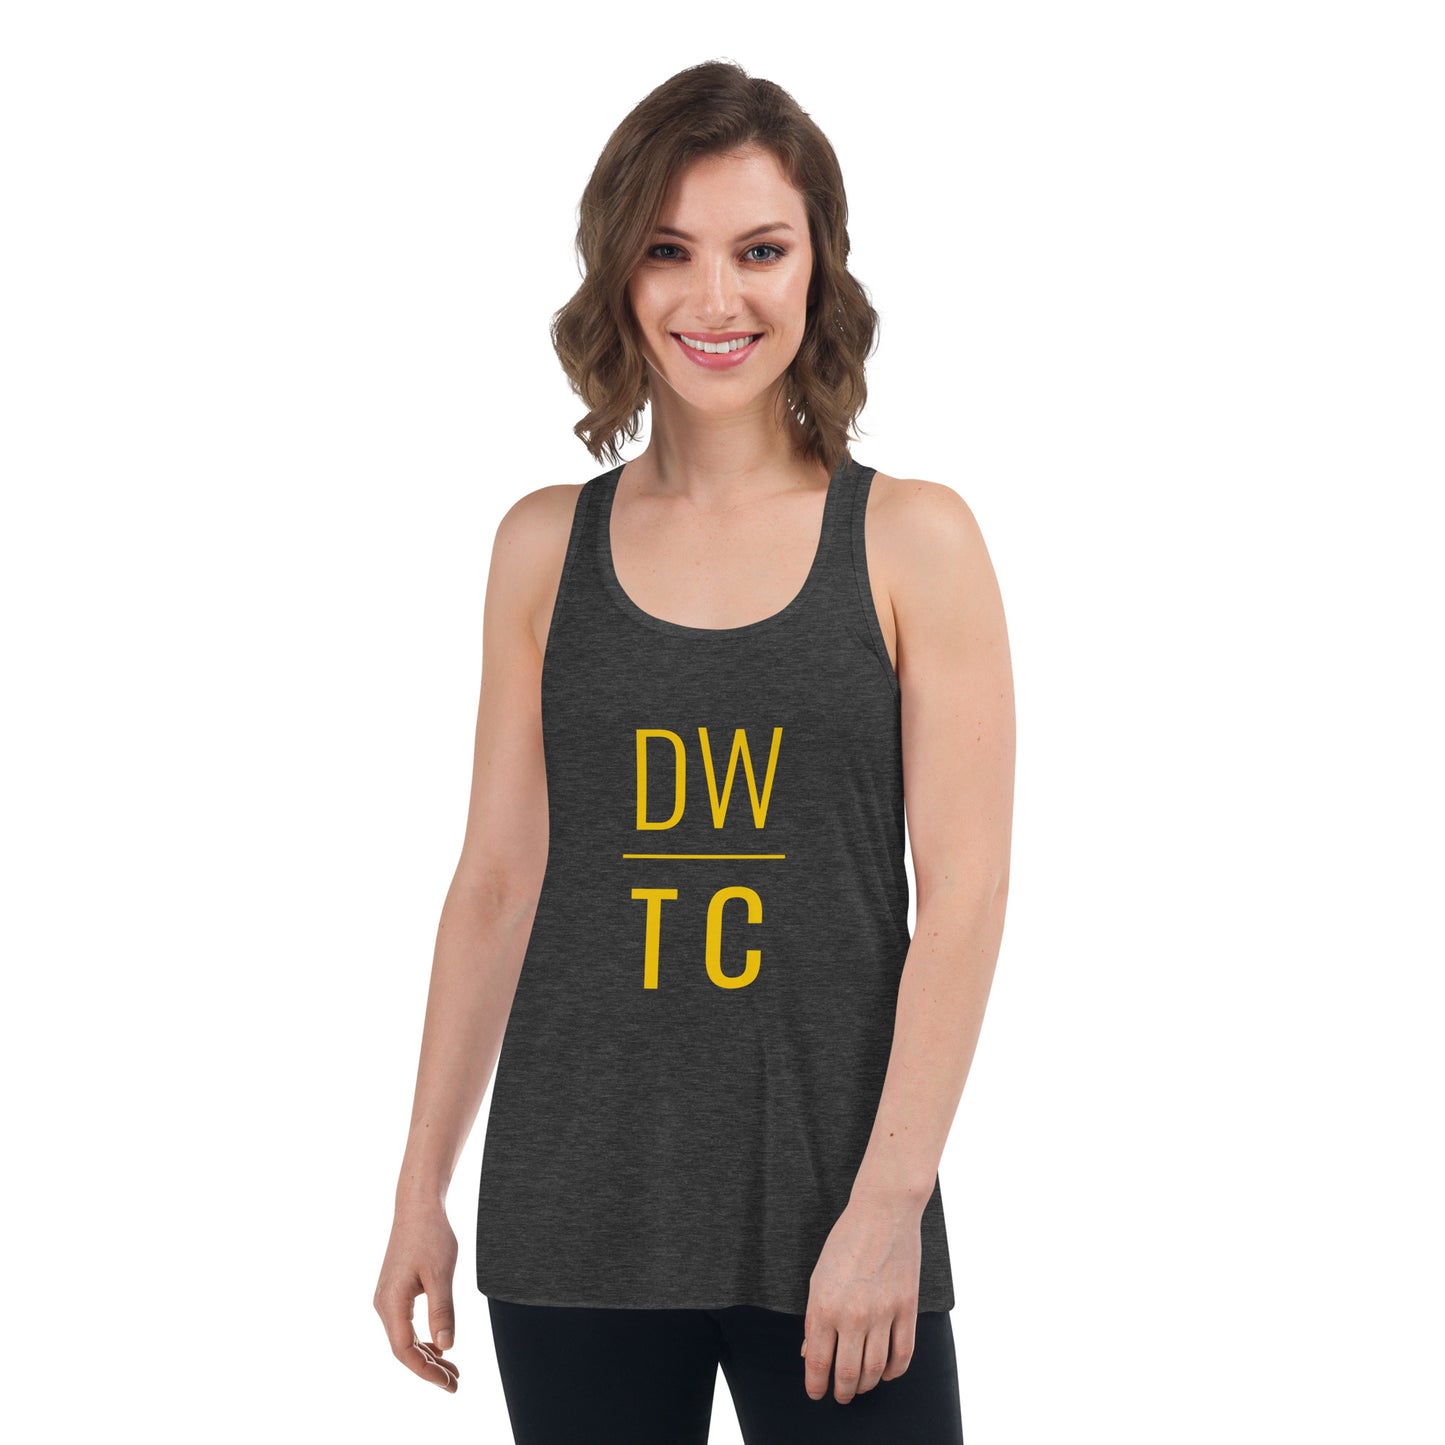 DWTC Women's Flowy Racerback Tank